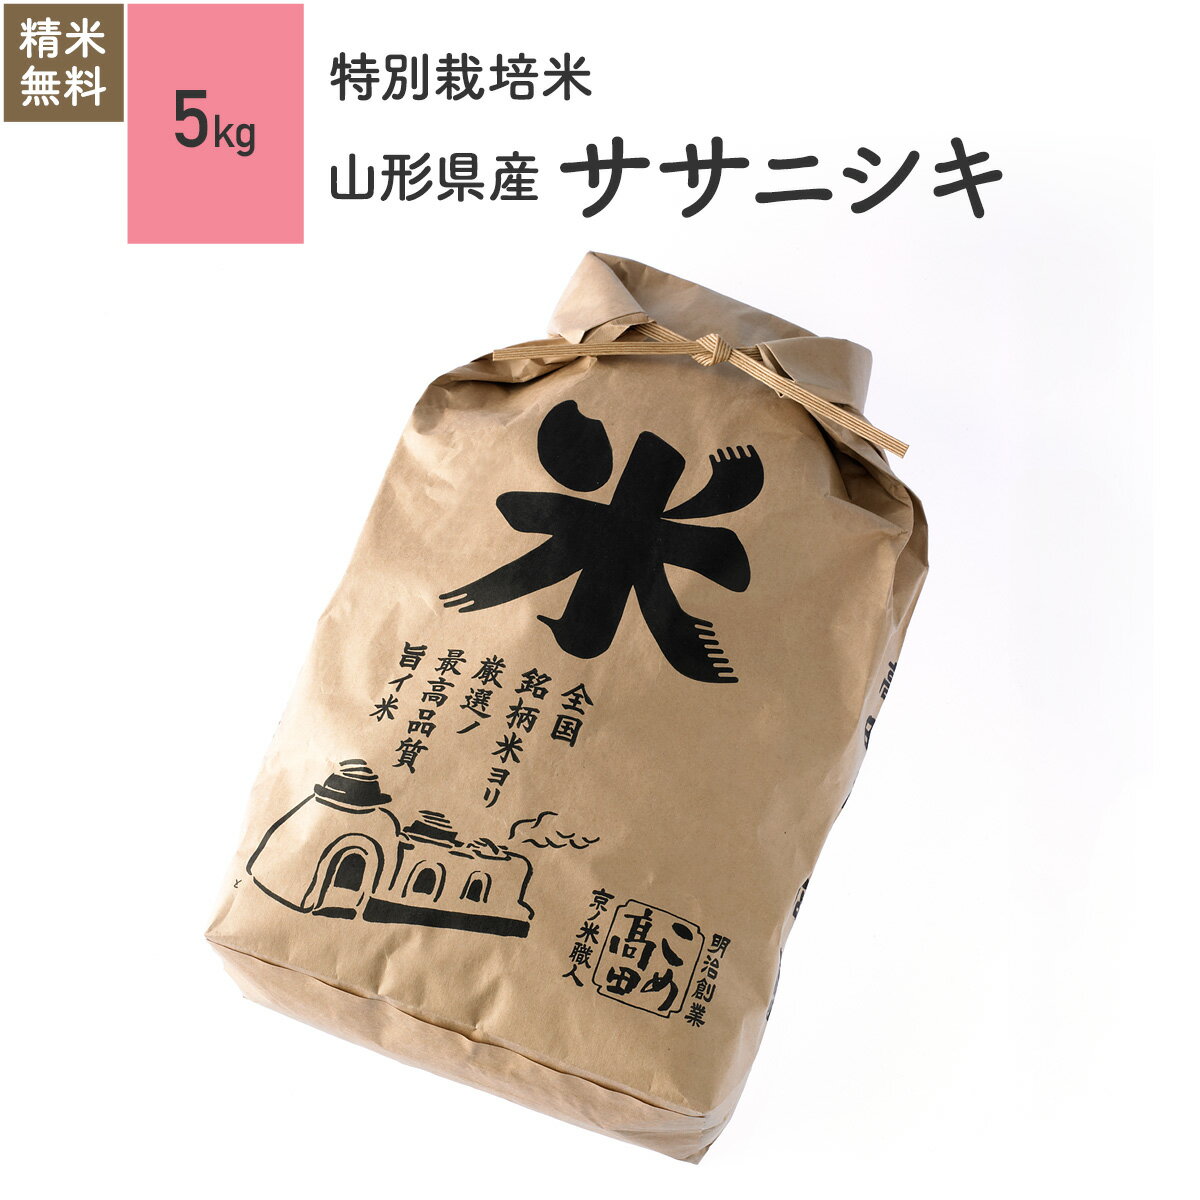 米 5kg ササニシキ 山形県産 特別栽培米 令和元年産お米 分つき米 玄米